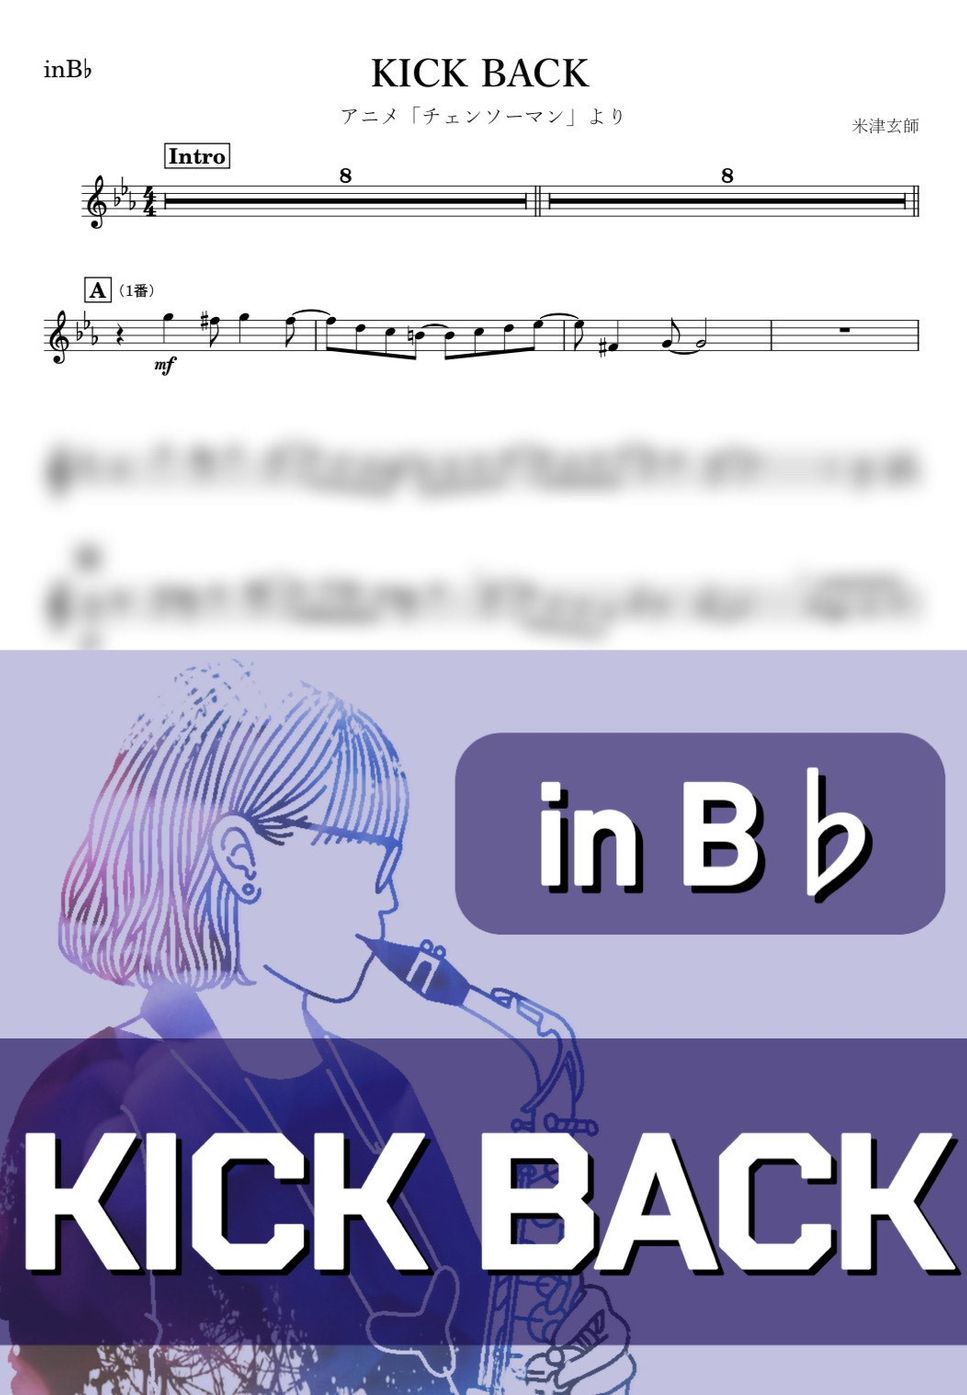 米津玄師 - KICK BACK (B♭) by kanamusic